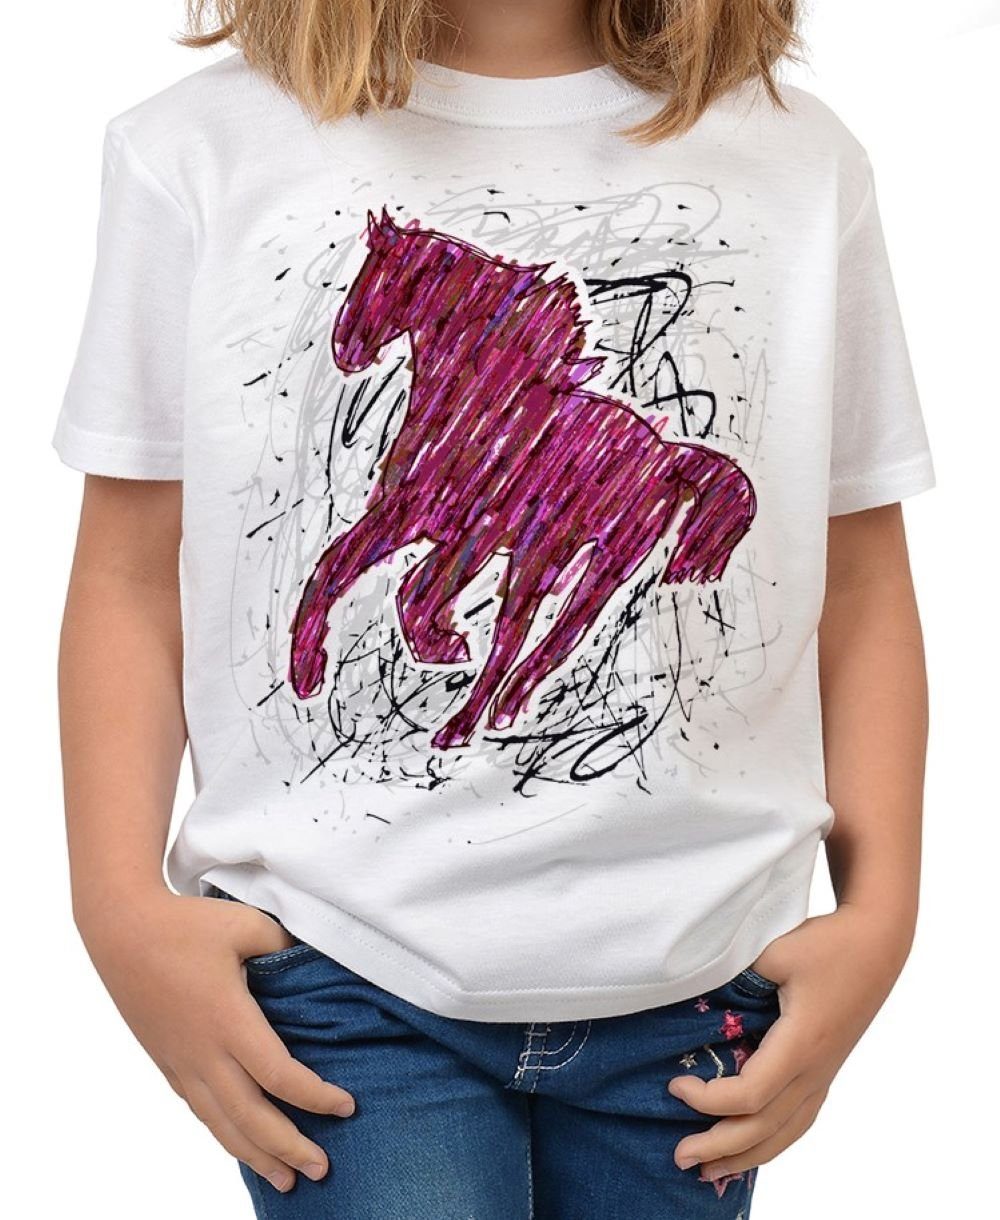 Tini - Shirts T-Shirt »Pferde Zeichnung Kindershirt« Pferde Motiv Shirt  Kindershirt : Pferd bunt, rosa online kaufen | OTTO